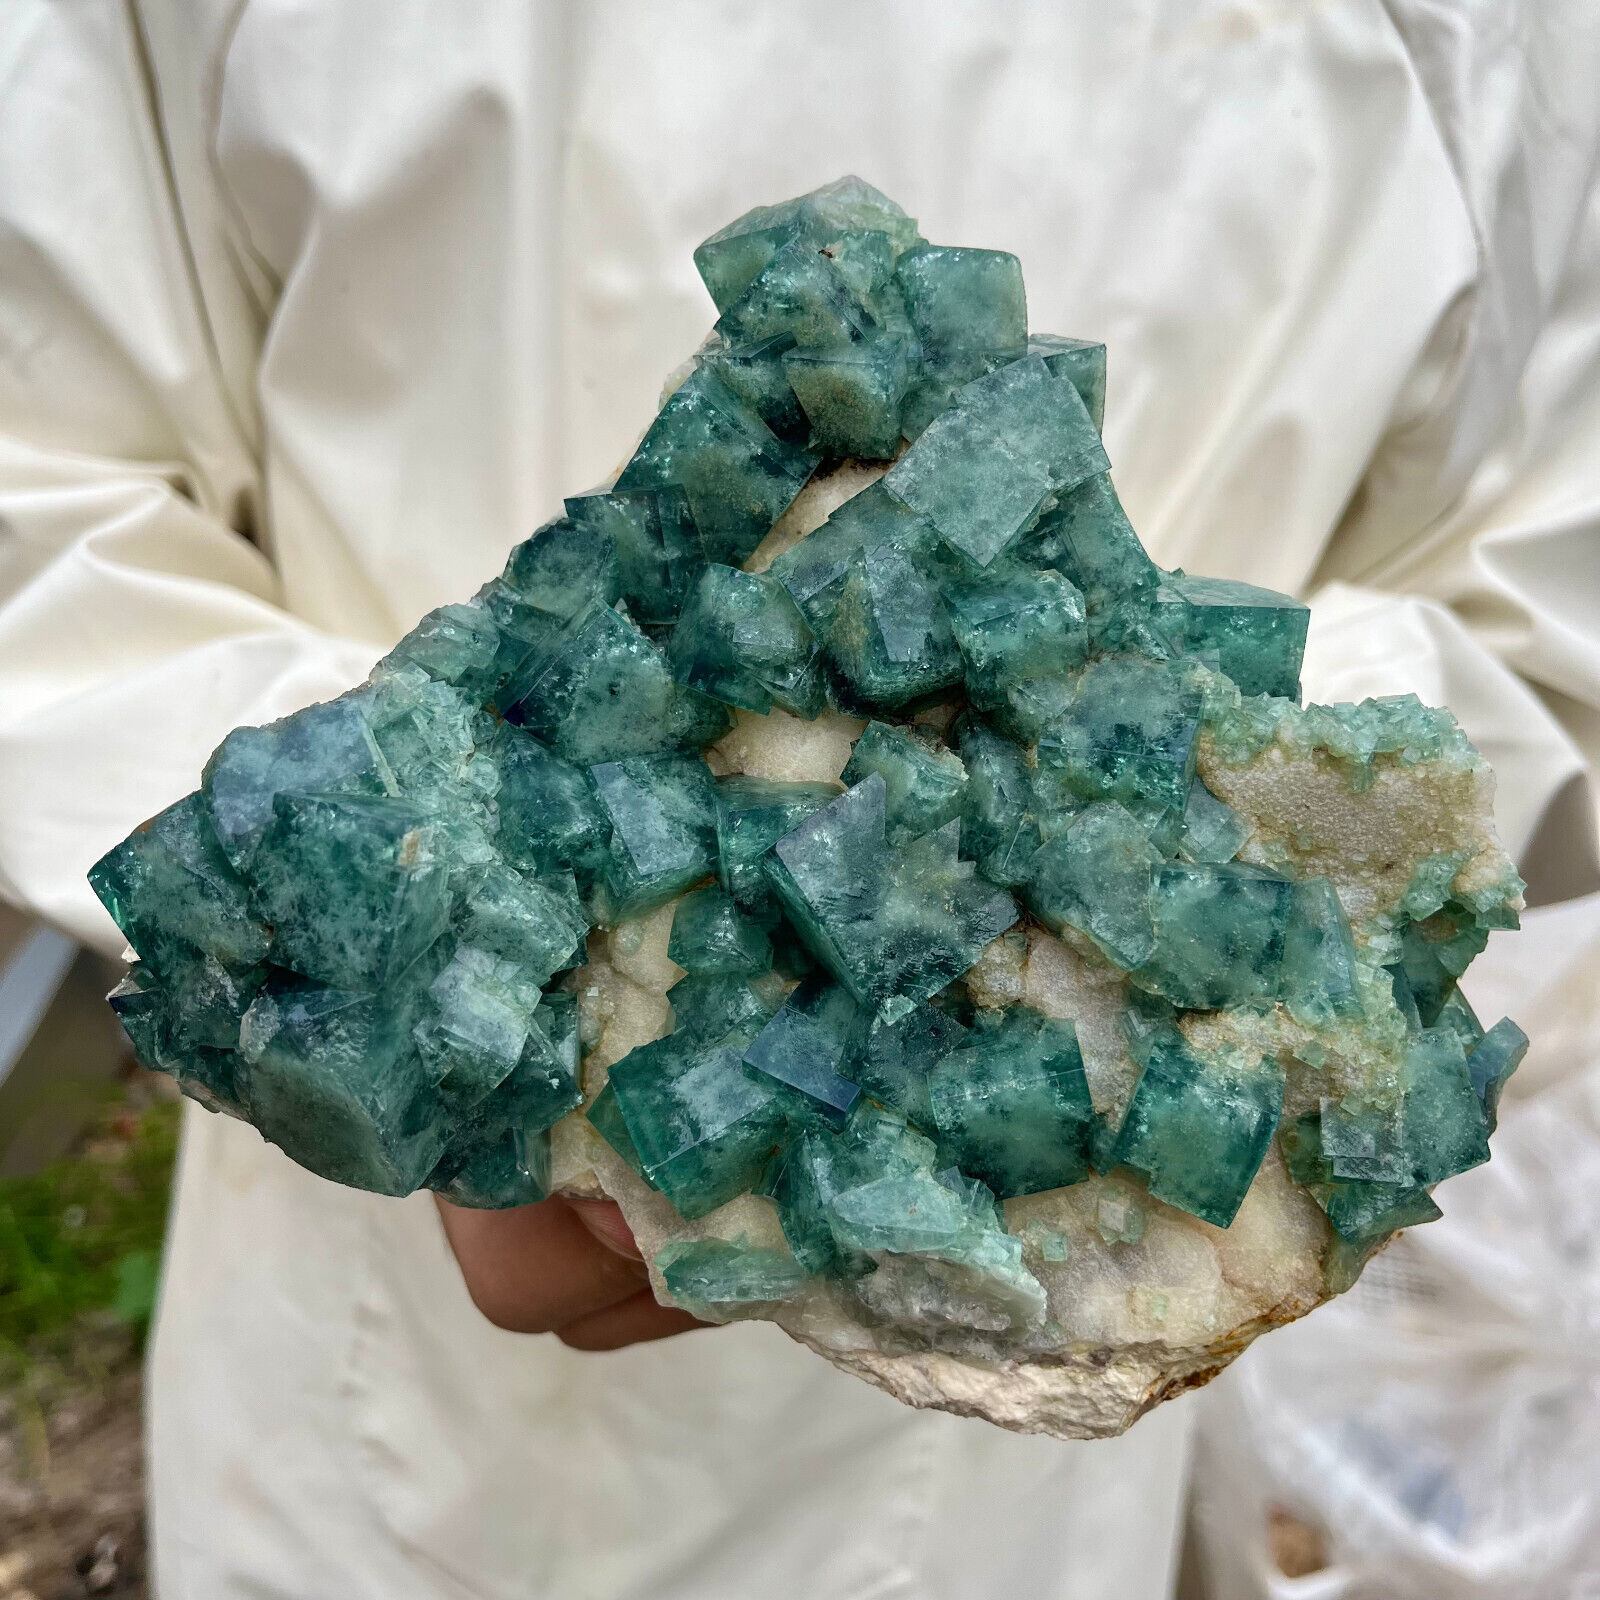 5.2lb Large NATURAL Green Cube FLUORITE Quartz Crystal Cluster Mineral Specimen